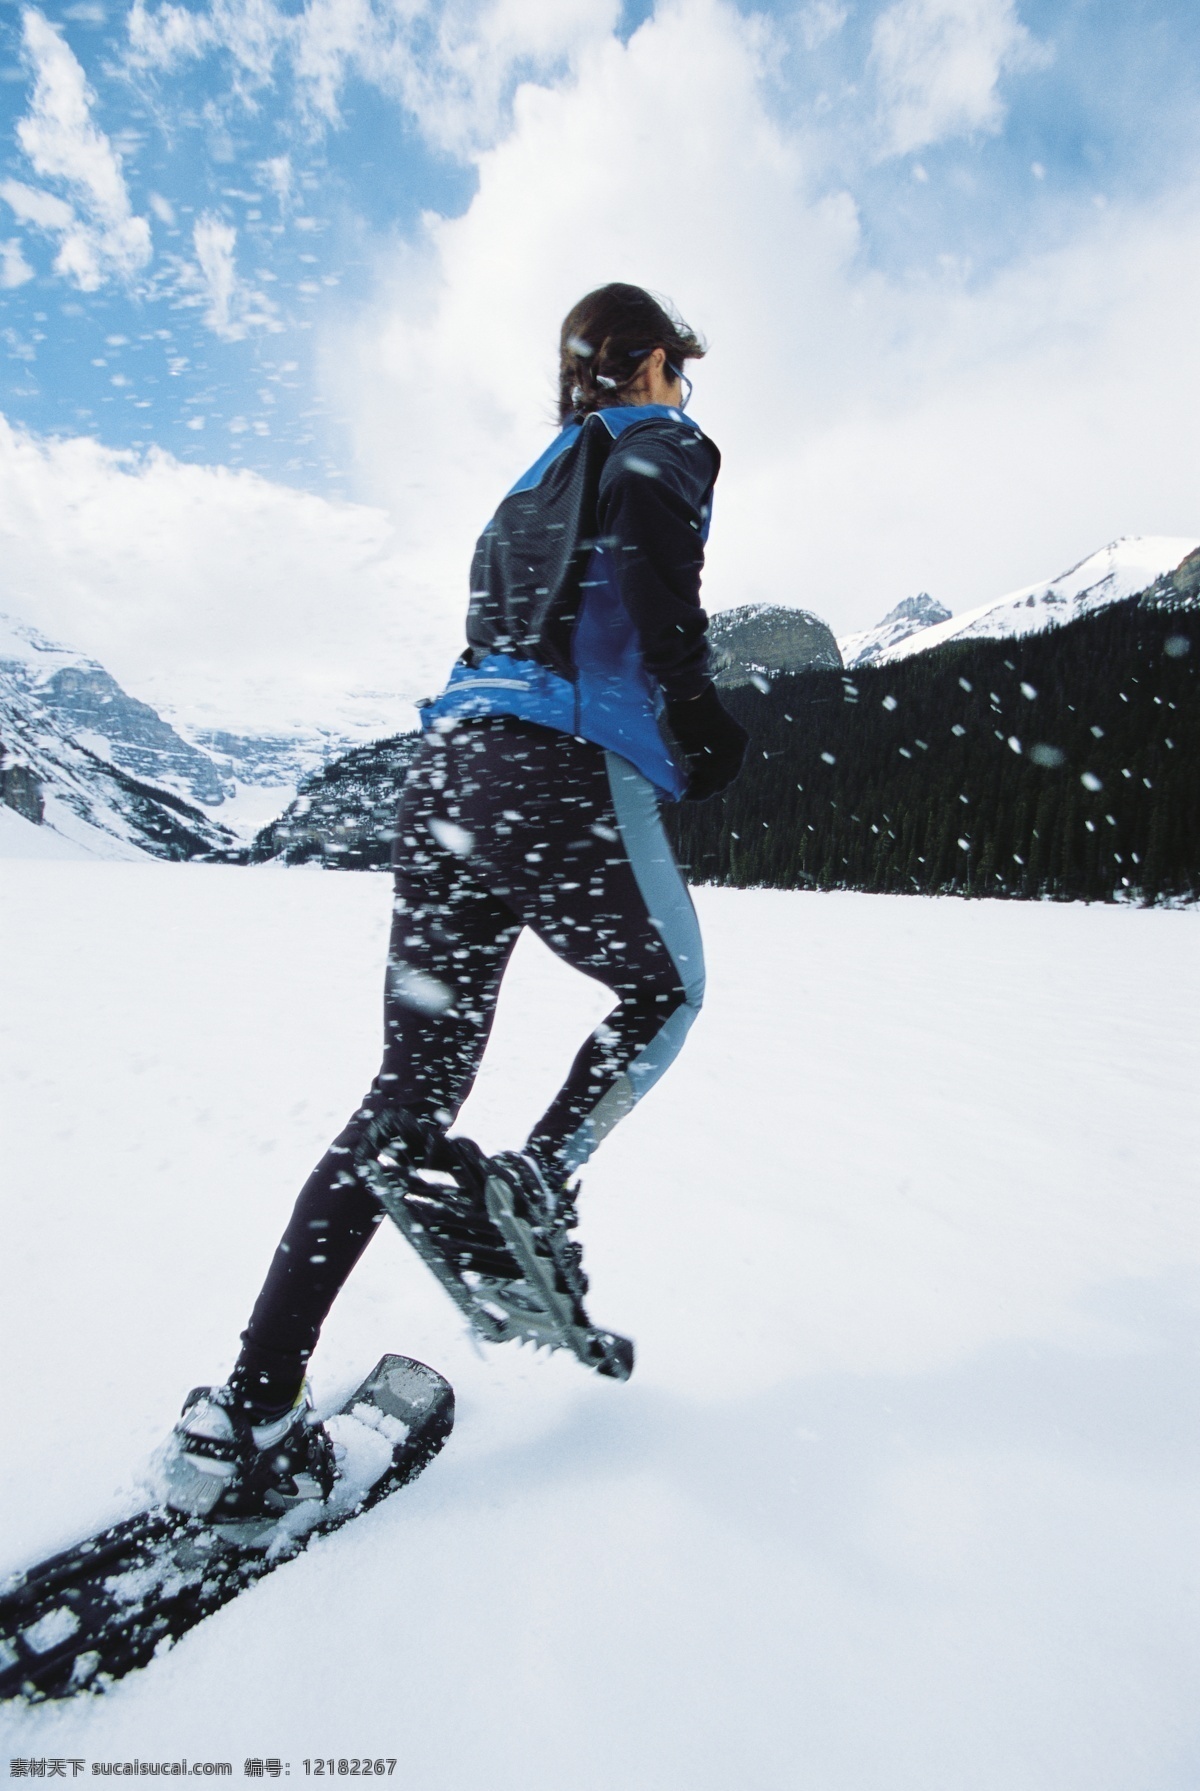 女性 滑雪 运动员 高清 雪地运动 划雪运动 极限运动 体育项目 滑板 运动图片 生活百科 雪山 风景 摄影图片 高清图片 体育运动 白色